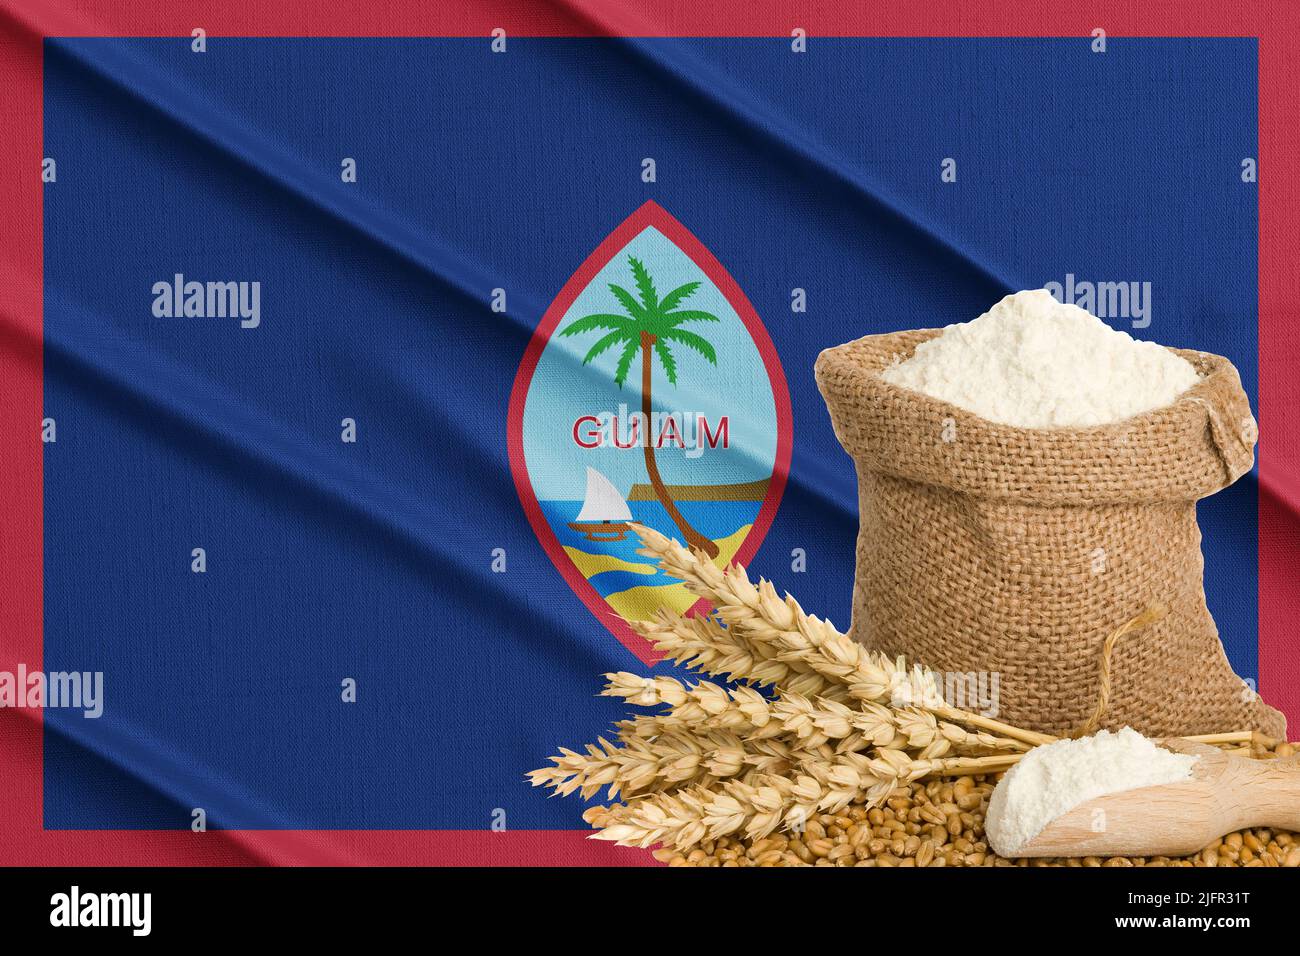 Guam-Getreidekrise, Konzept der globalen Hungerkrise, Hintergrund Flagge Guam-Weizenkorn. Konzept des Weizenanbaus in Russland Stockfoto